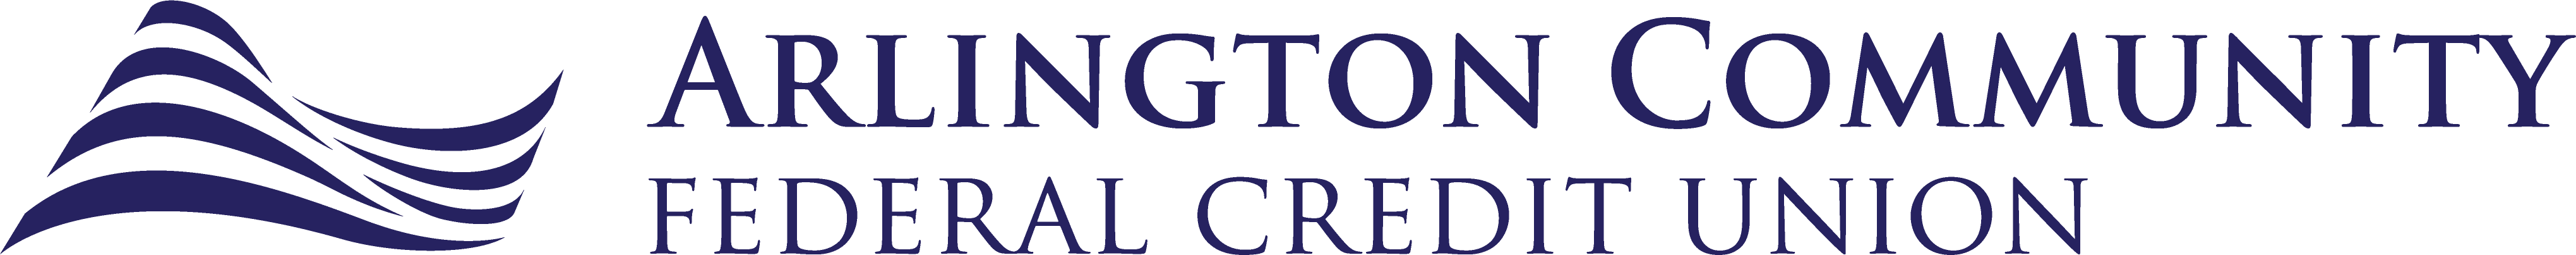 ArlingtonFCU Logo